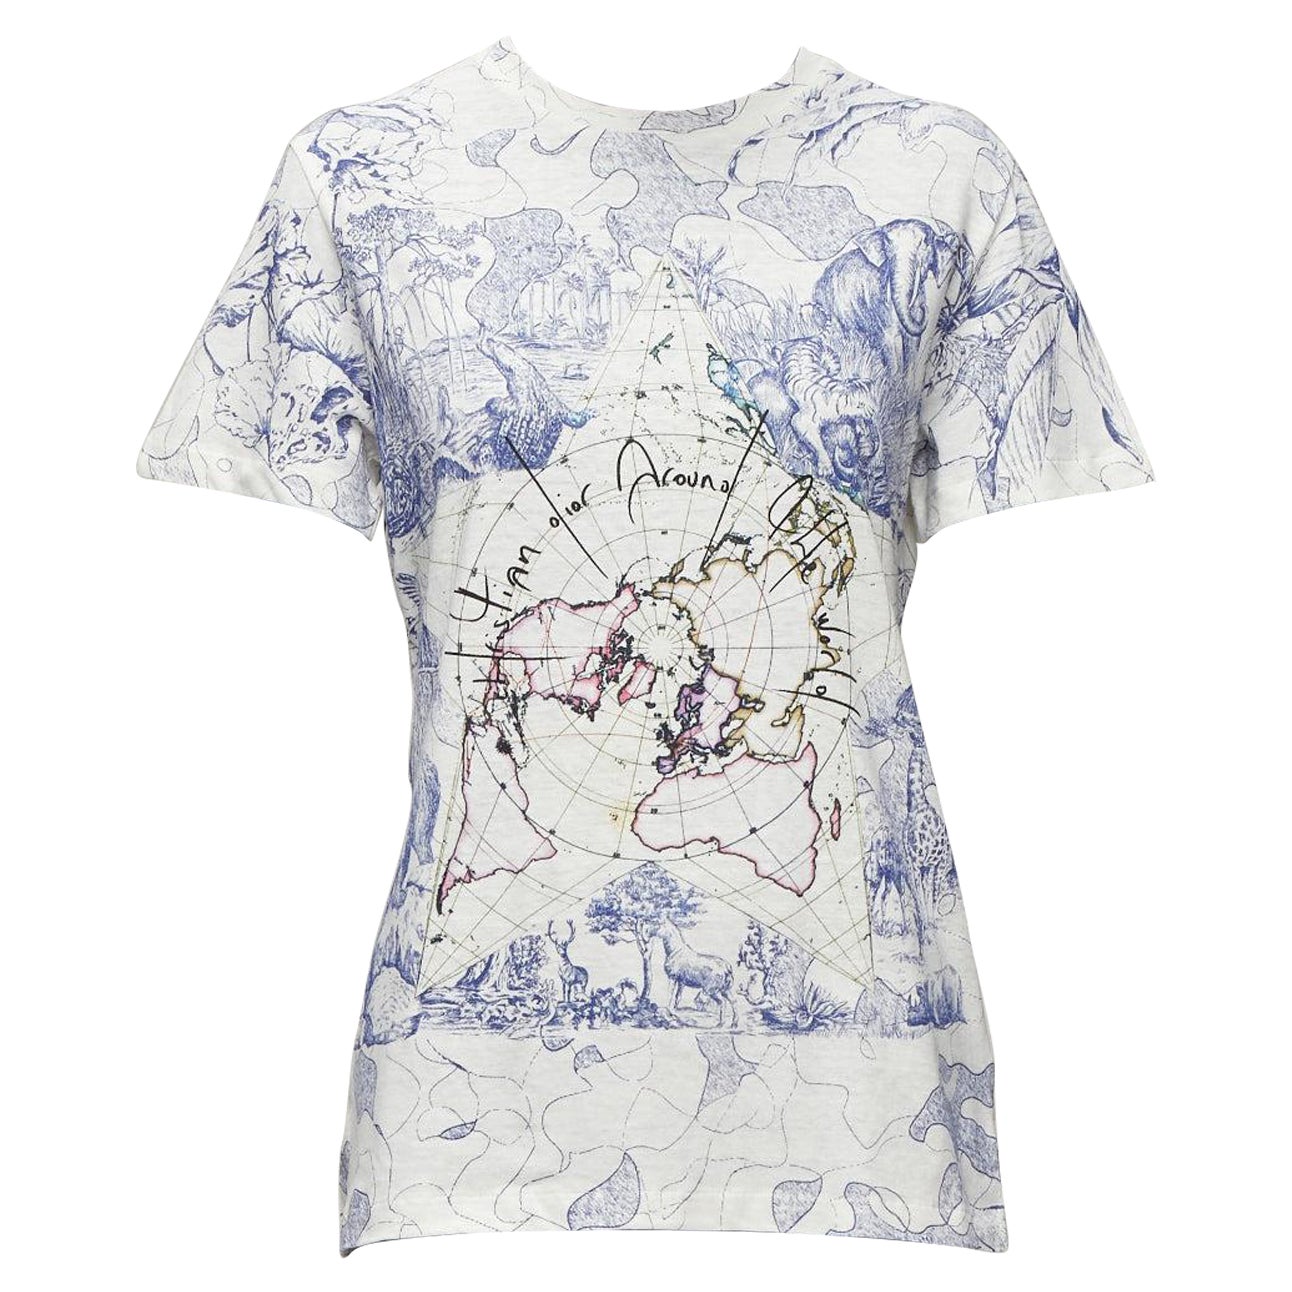 DIOR Around The World Fantaisie blue white print cotton linen tshirt XS